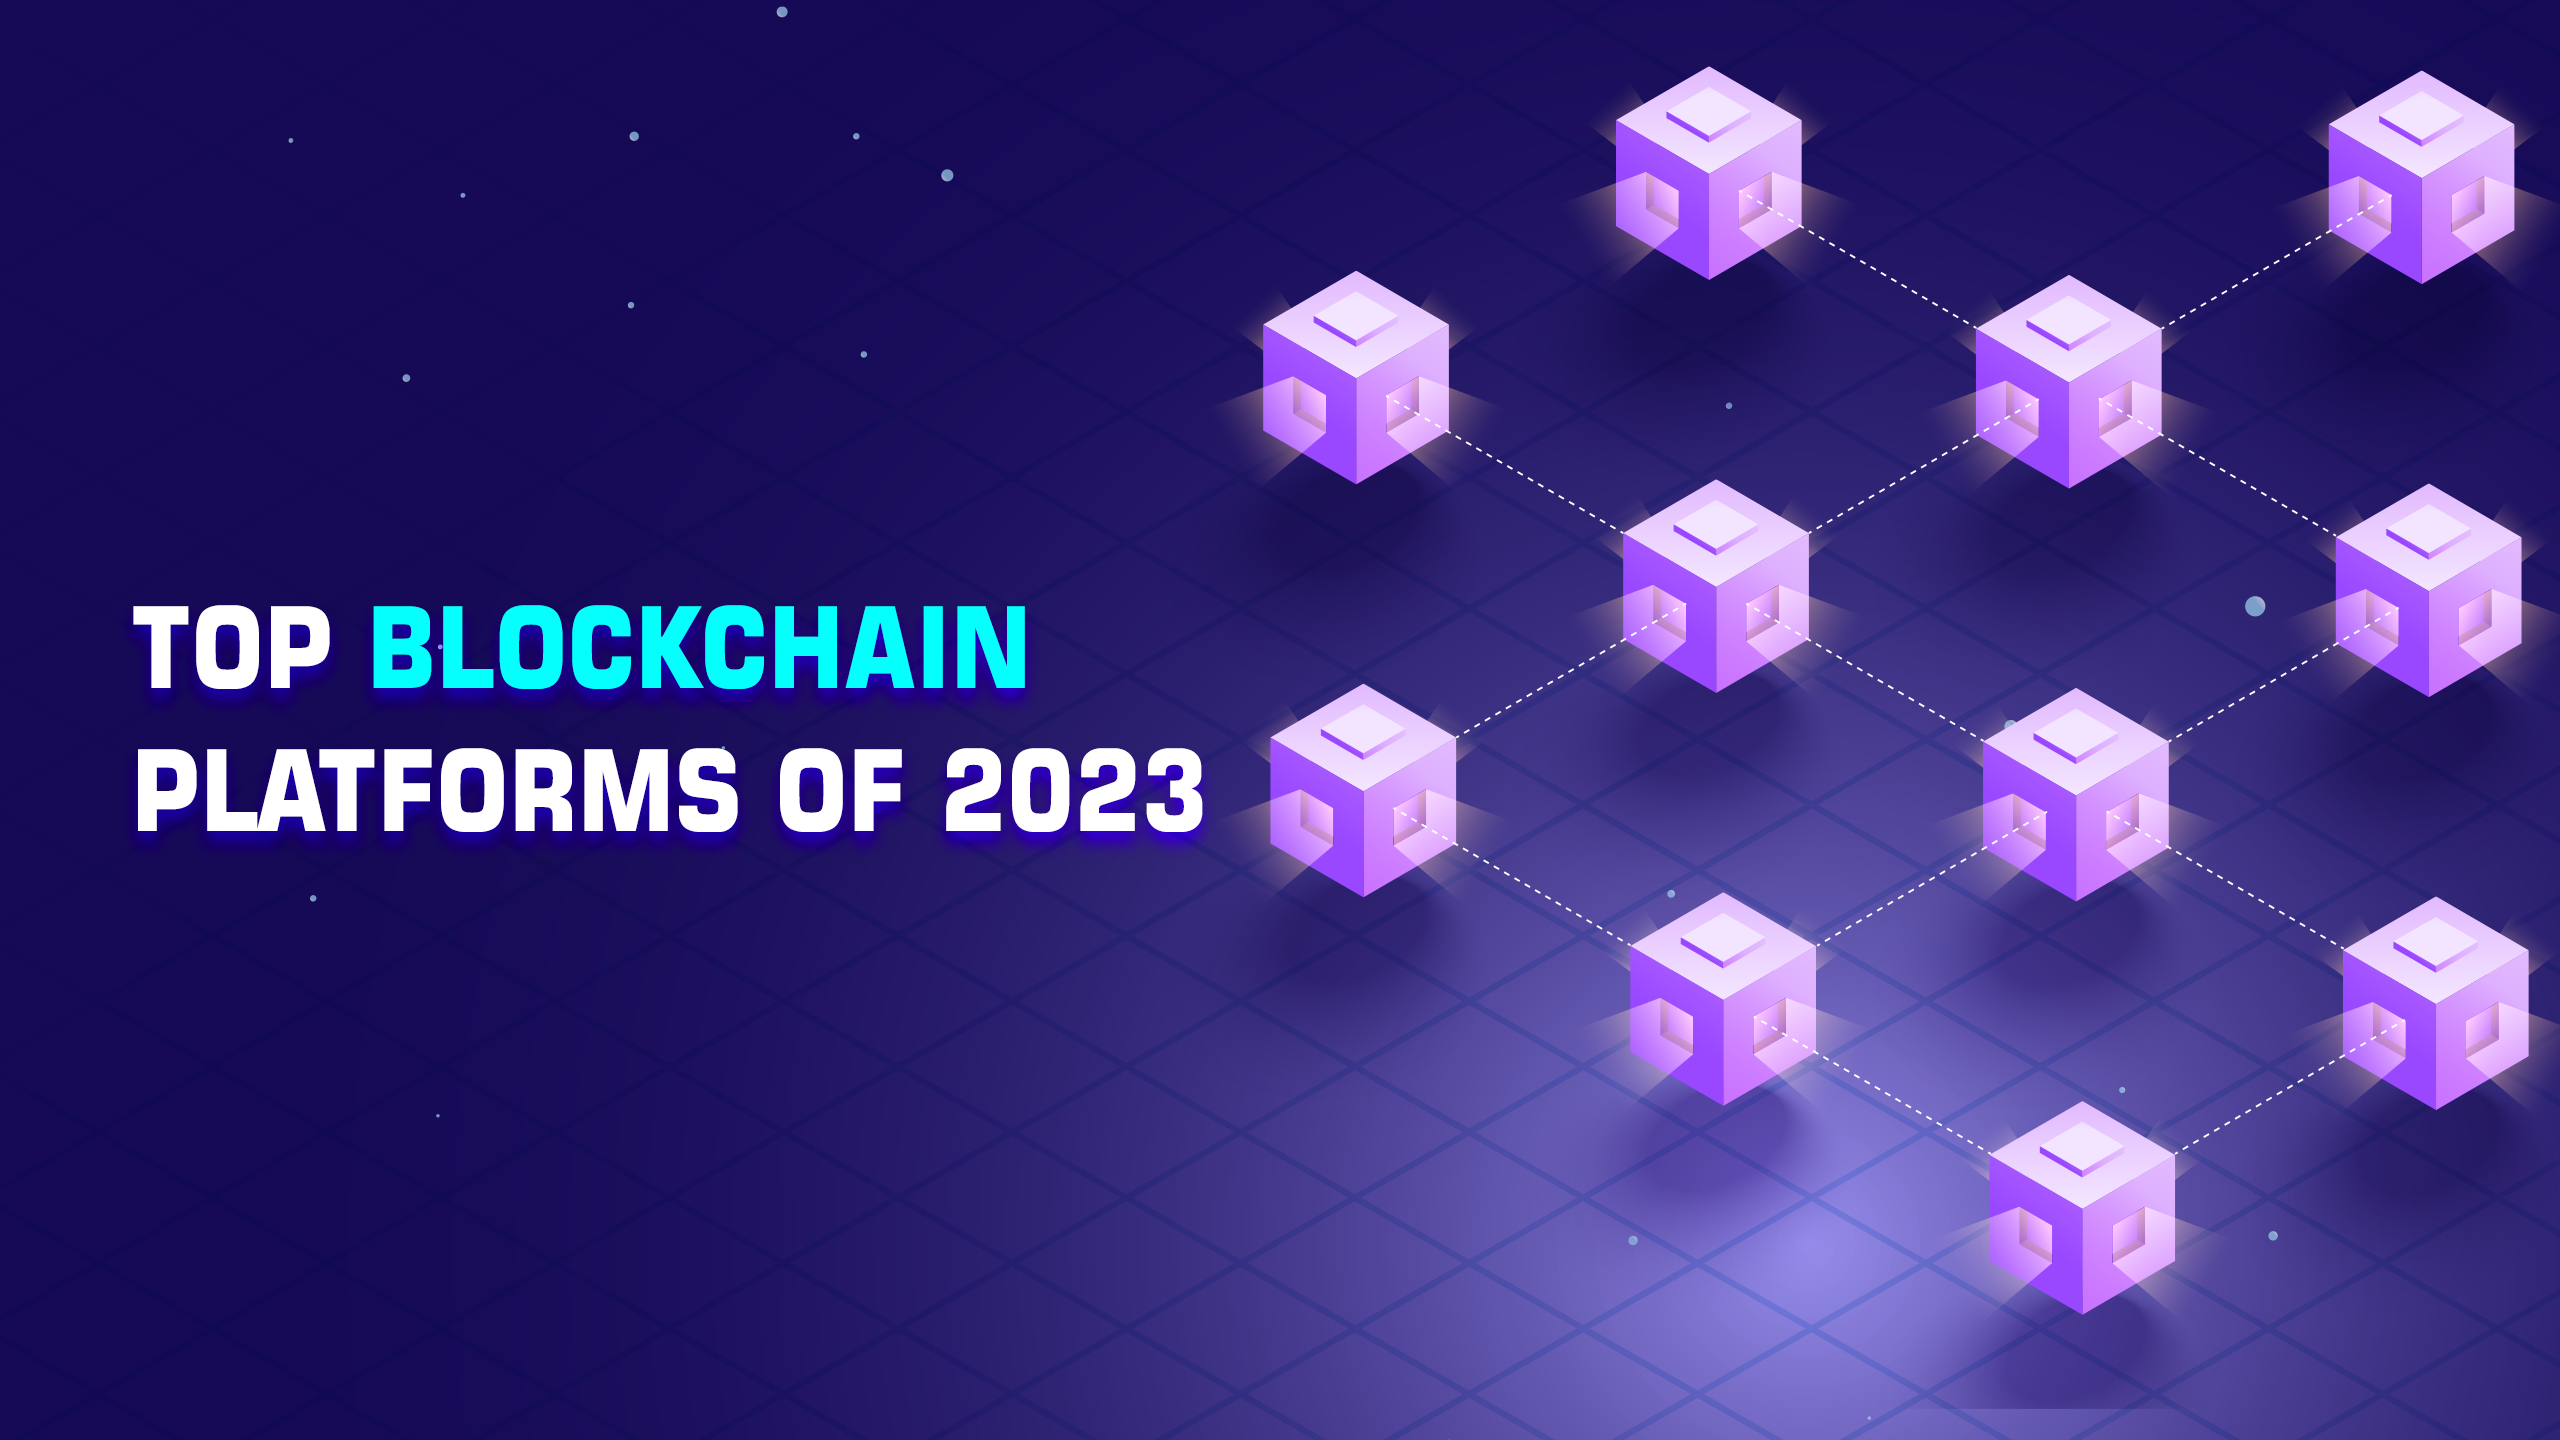 Blockchain Platforms